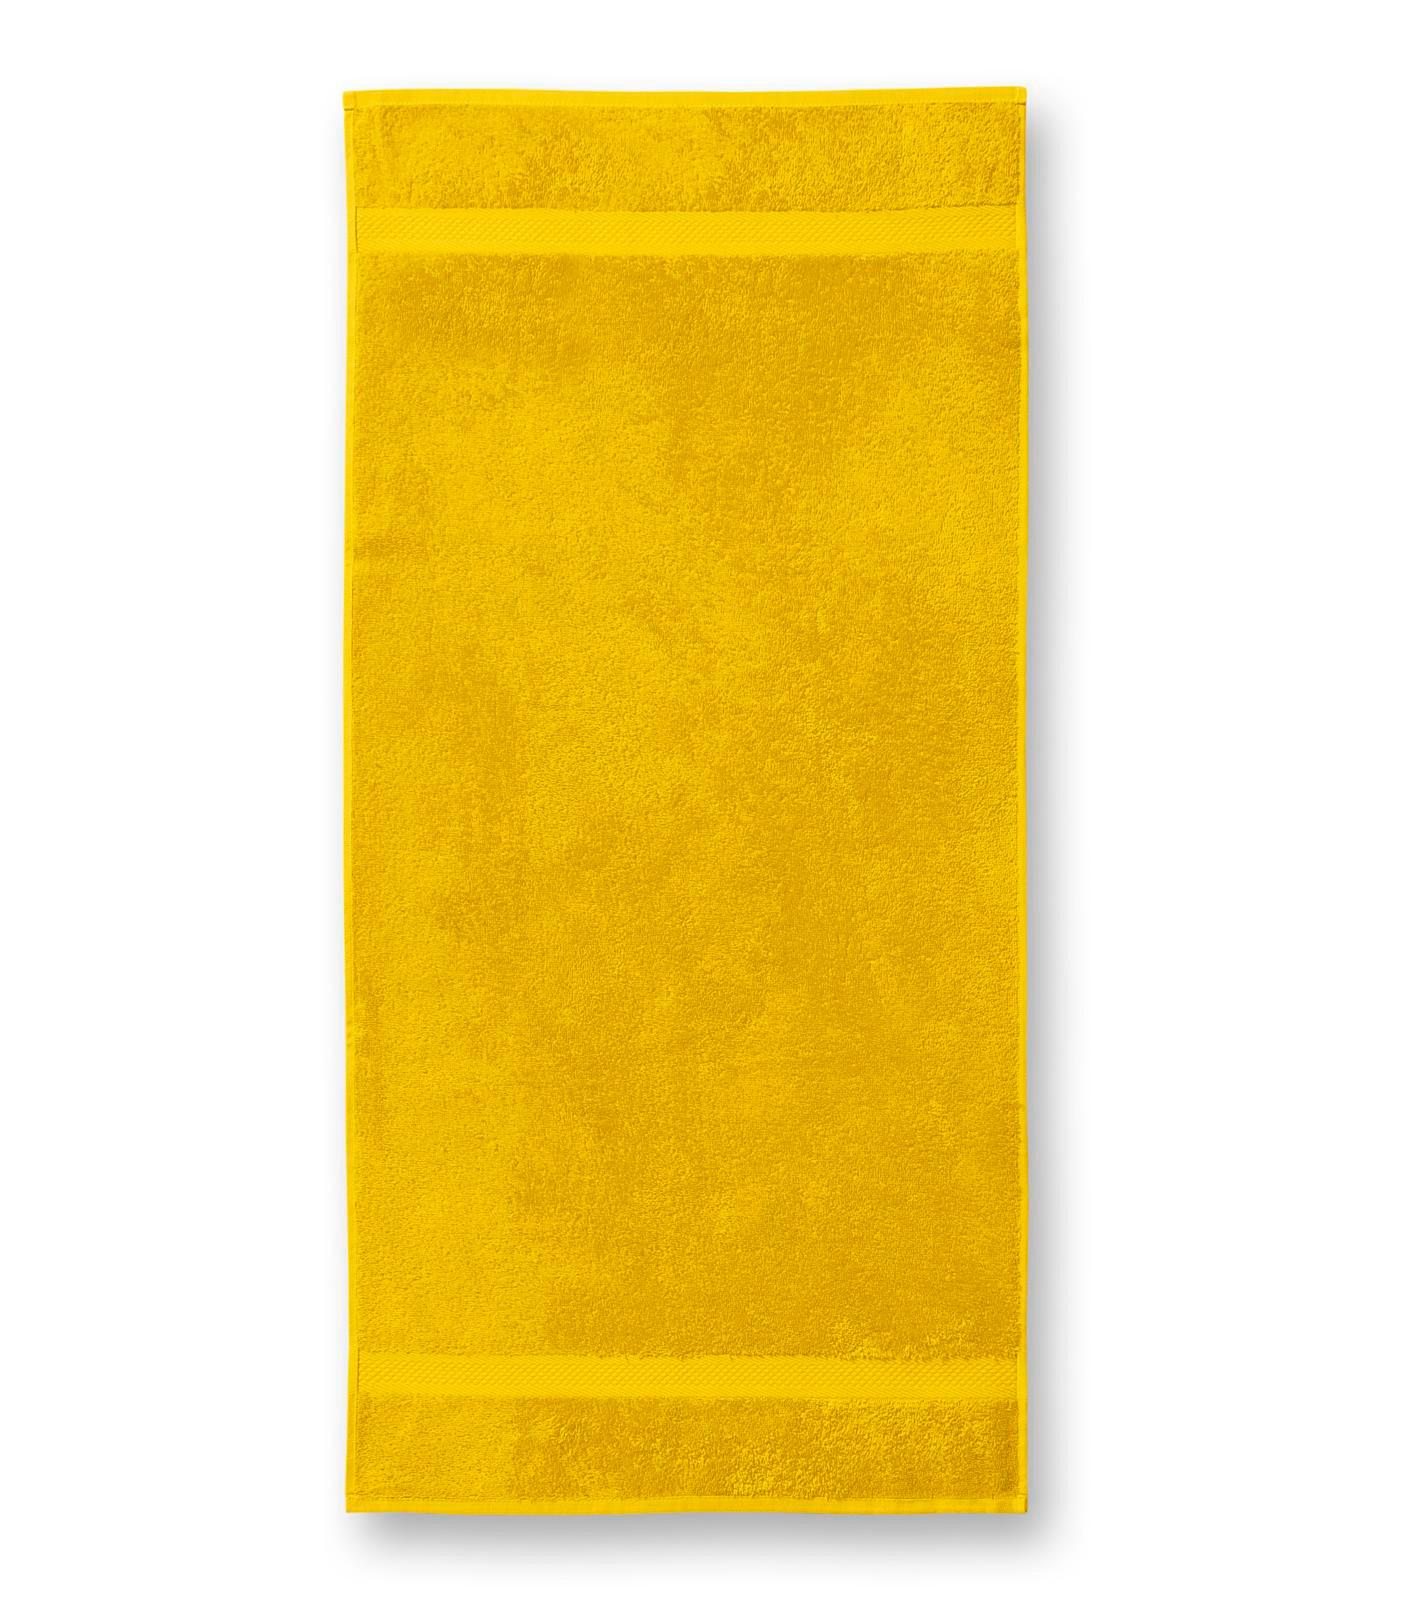 Terija cilpiņu auduma dvielis. Izmēr 50 x 100 cm. Dzeltenā krāsā ar bodņu abos galos.